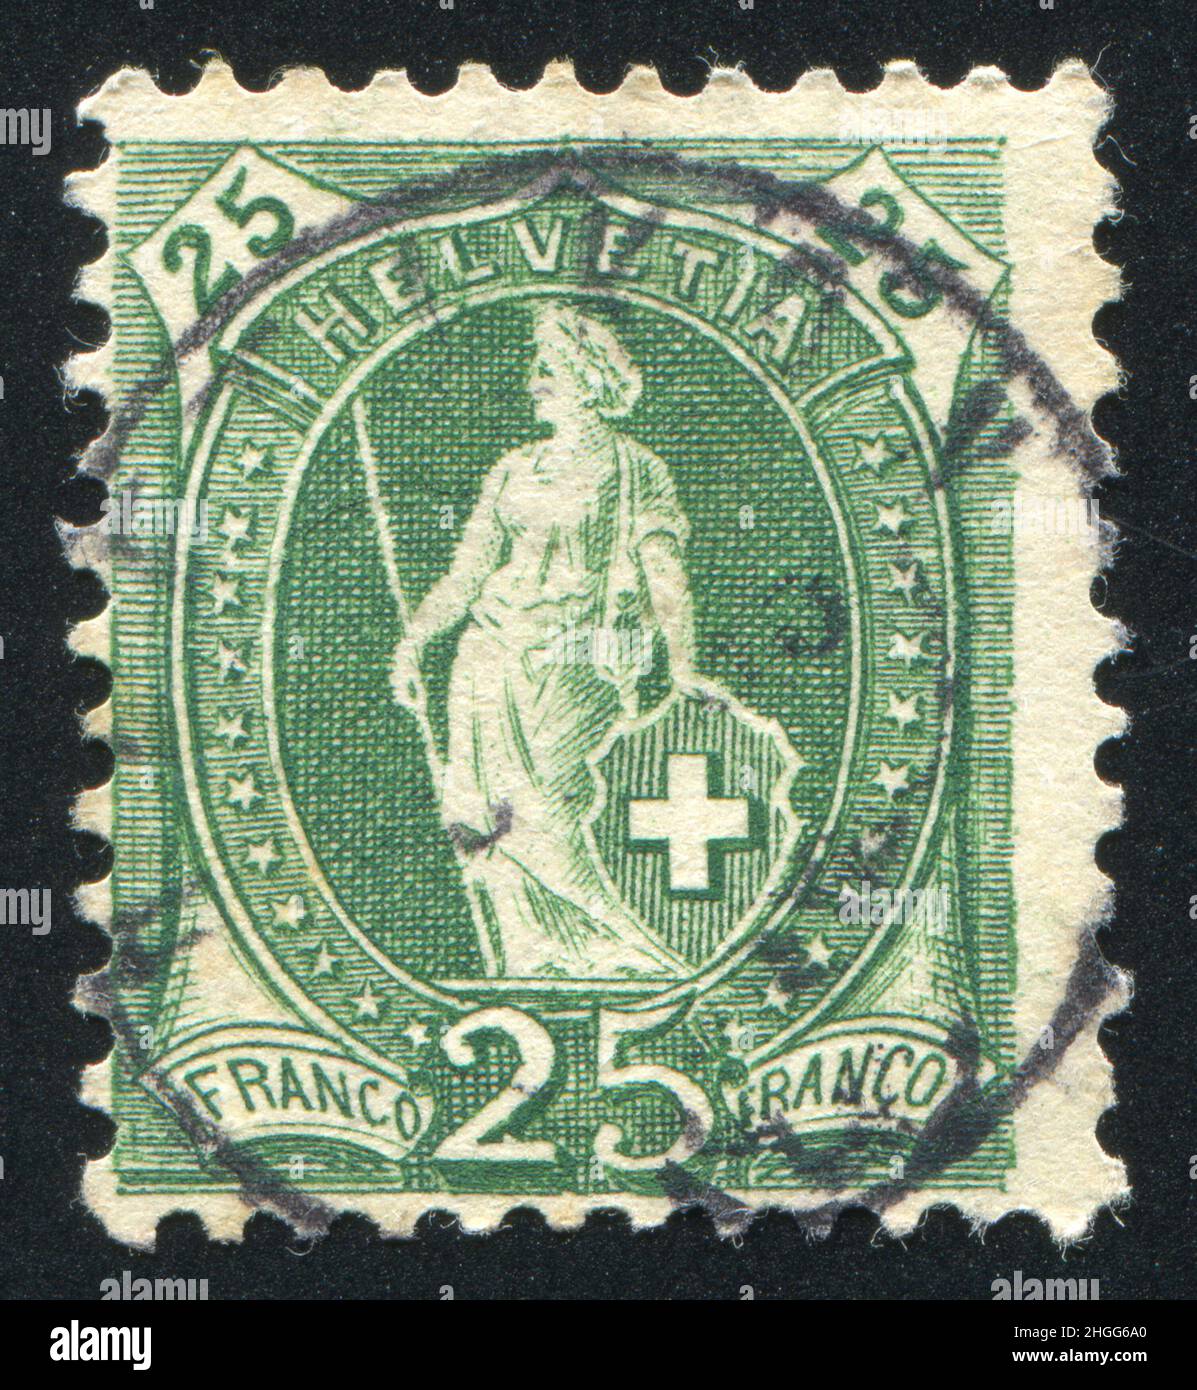 SCHWEIZ - UM 1904: Briefmarke gedruckt von der Schweiz, zeigt Helvetia, um 1904. Stockfoto